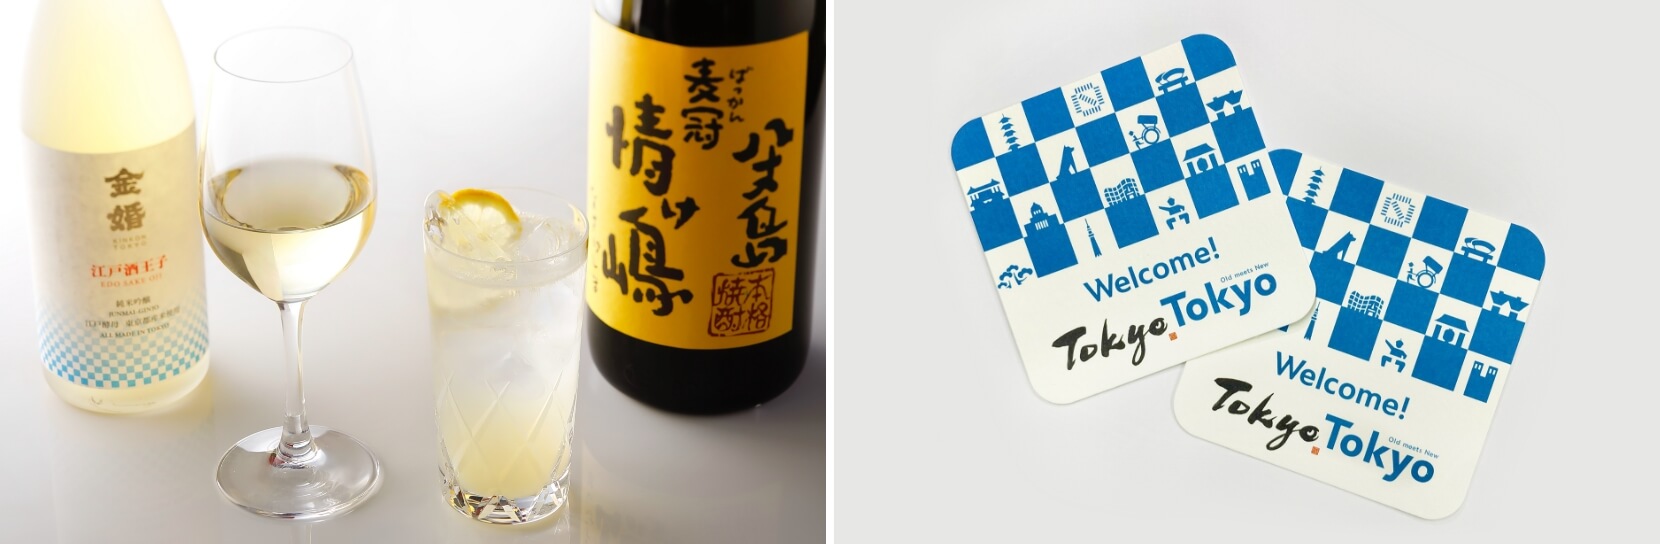 『新江戸洋食』ベッラ・ヴィスタ×Tokyo Tokyo オープニング記念フェア イメージ9